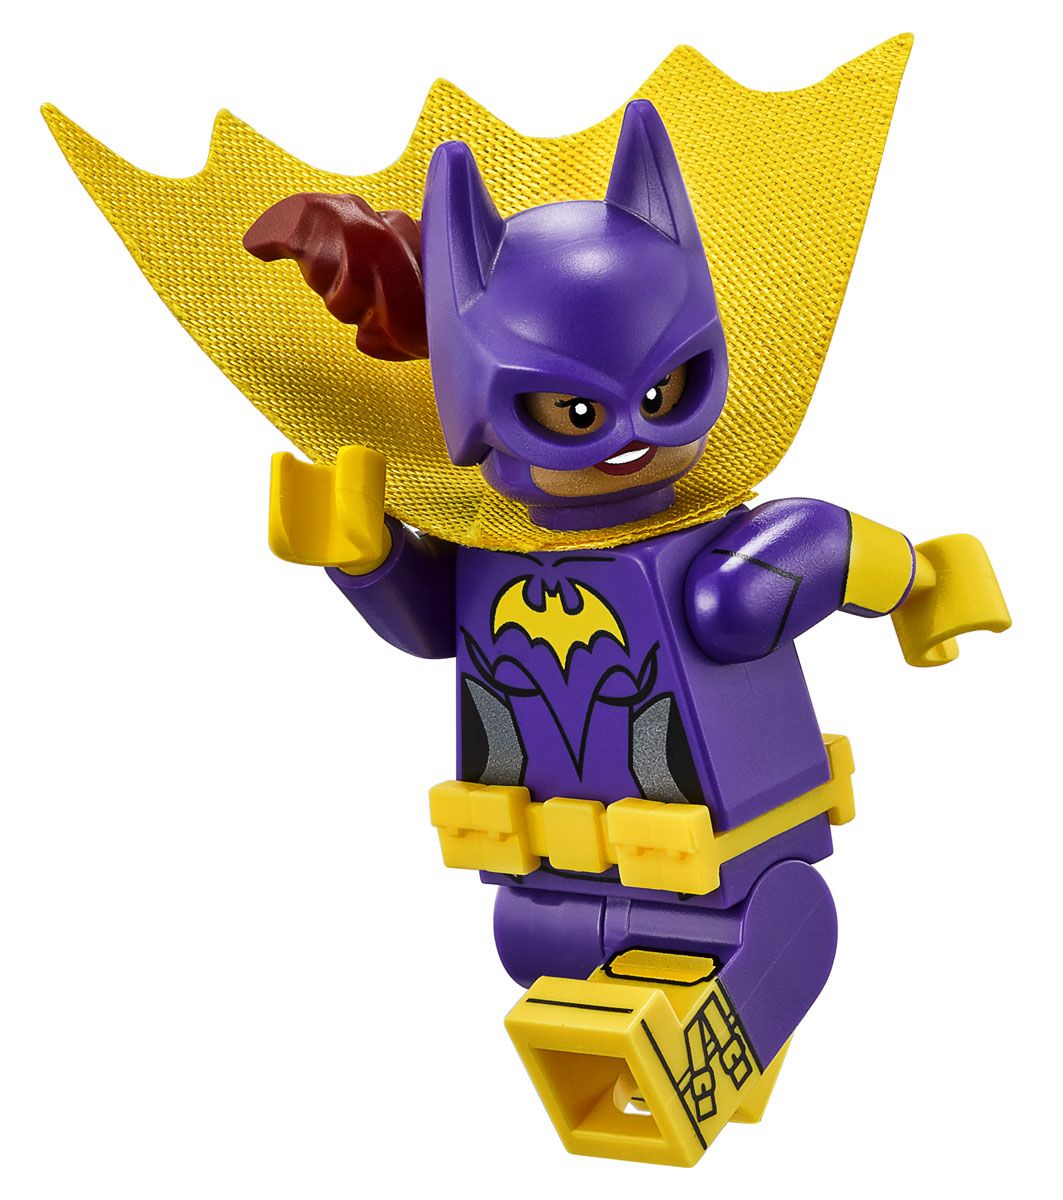 LEGO Batman Movie 70902   - 